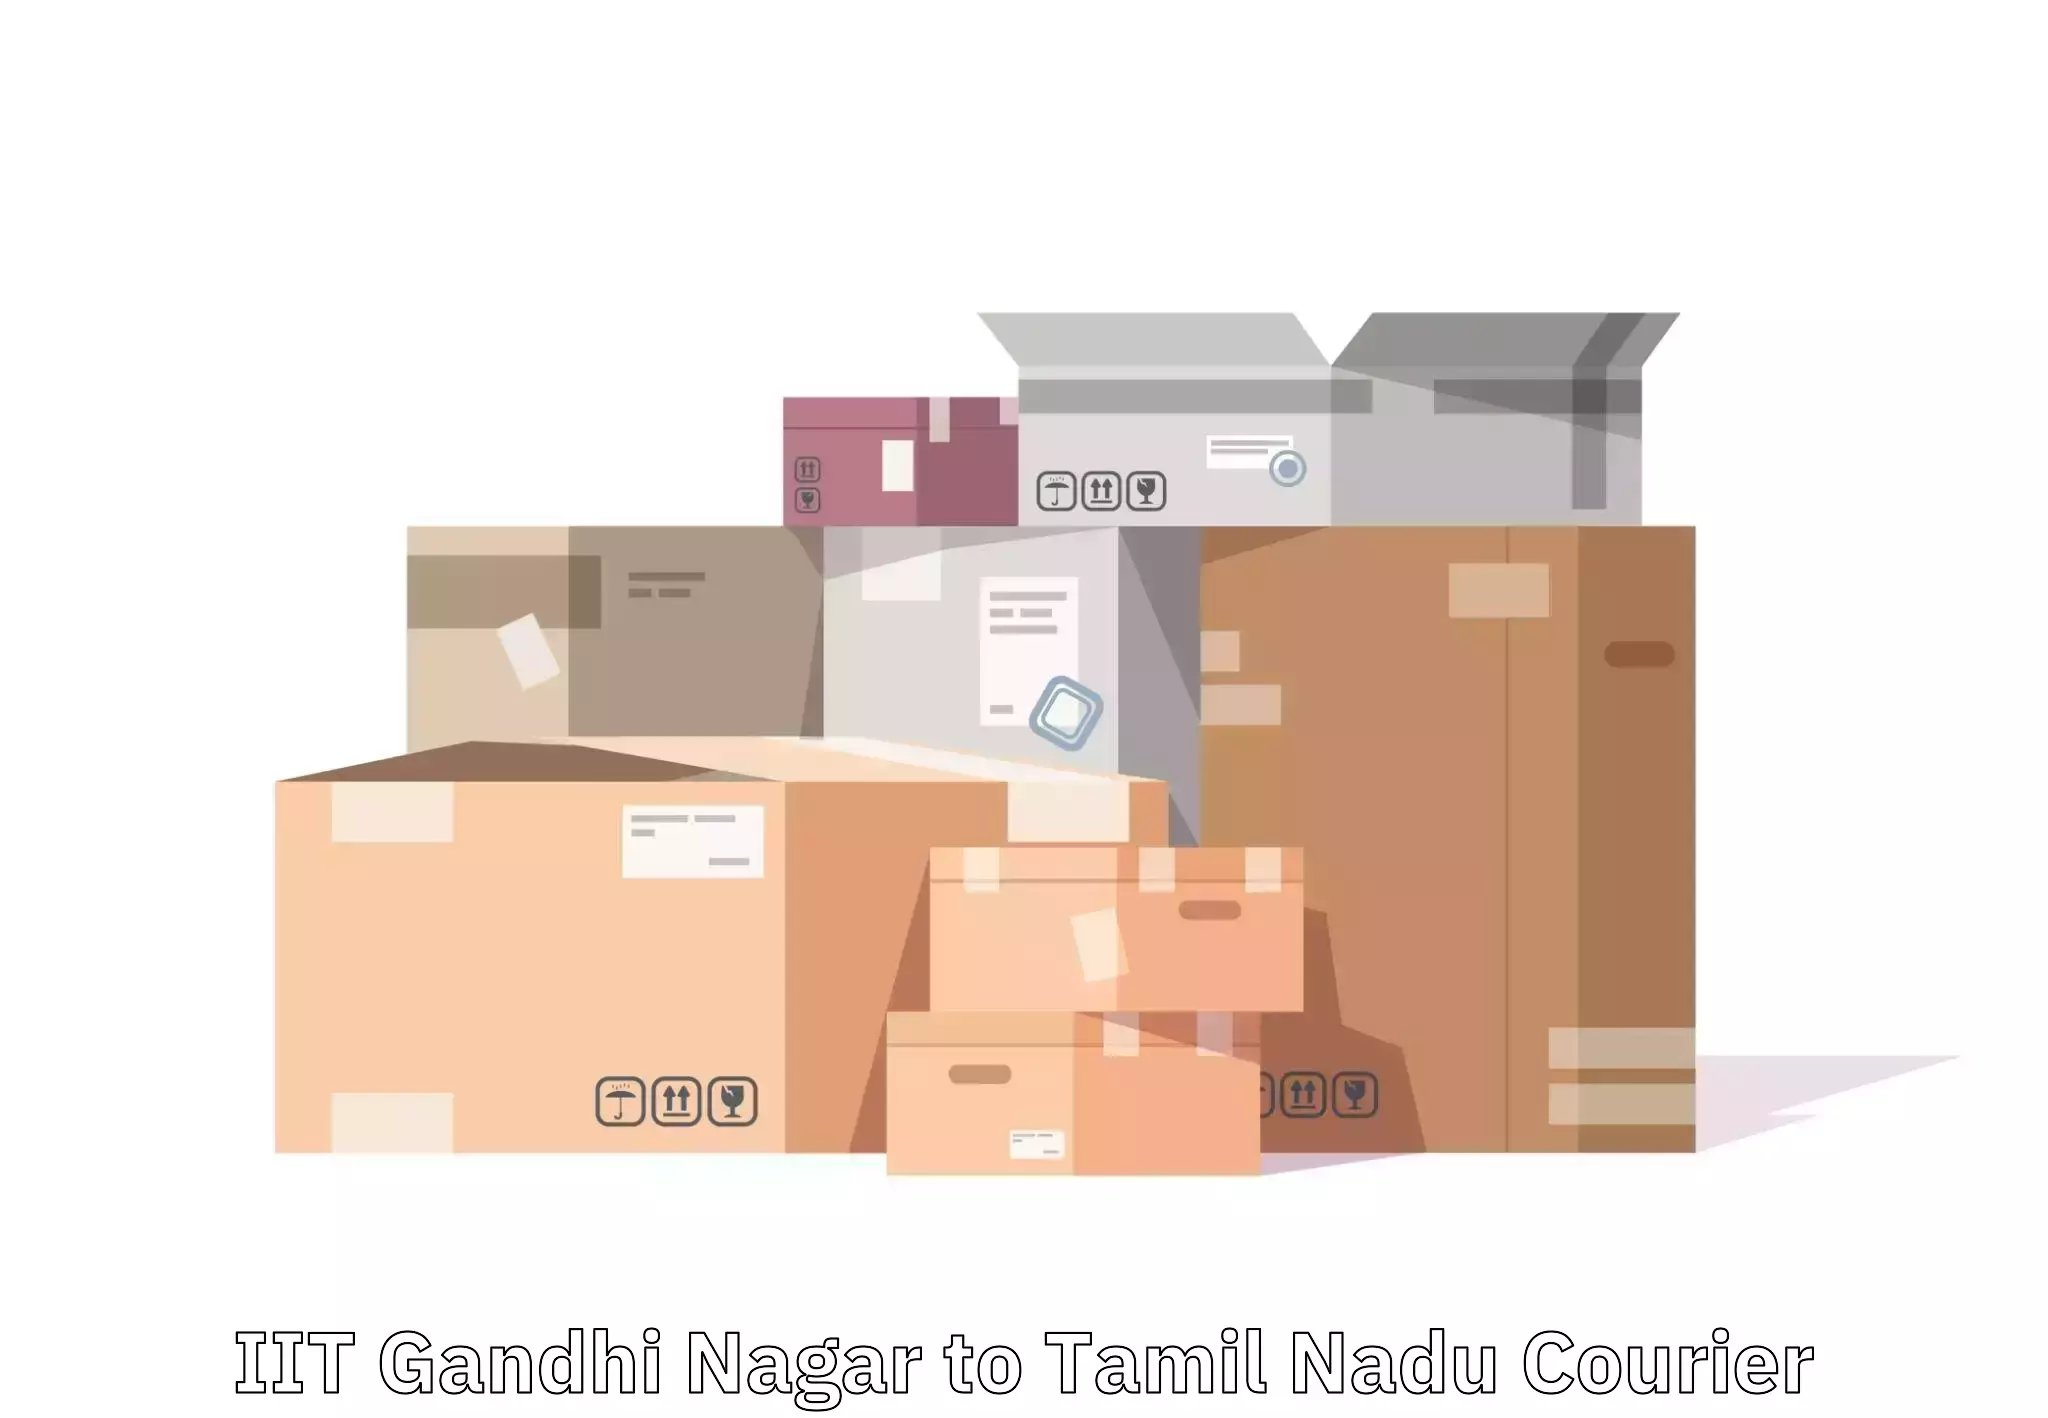 Luggage shipping efficiency in IIT Gandhi Nagar to Perunali